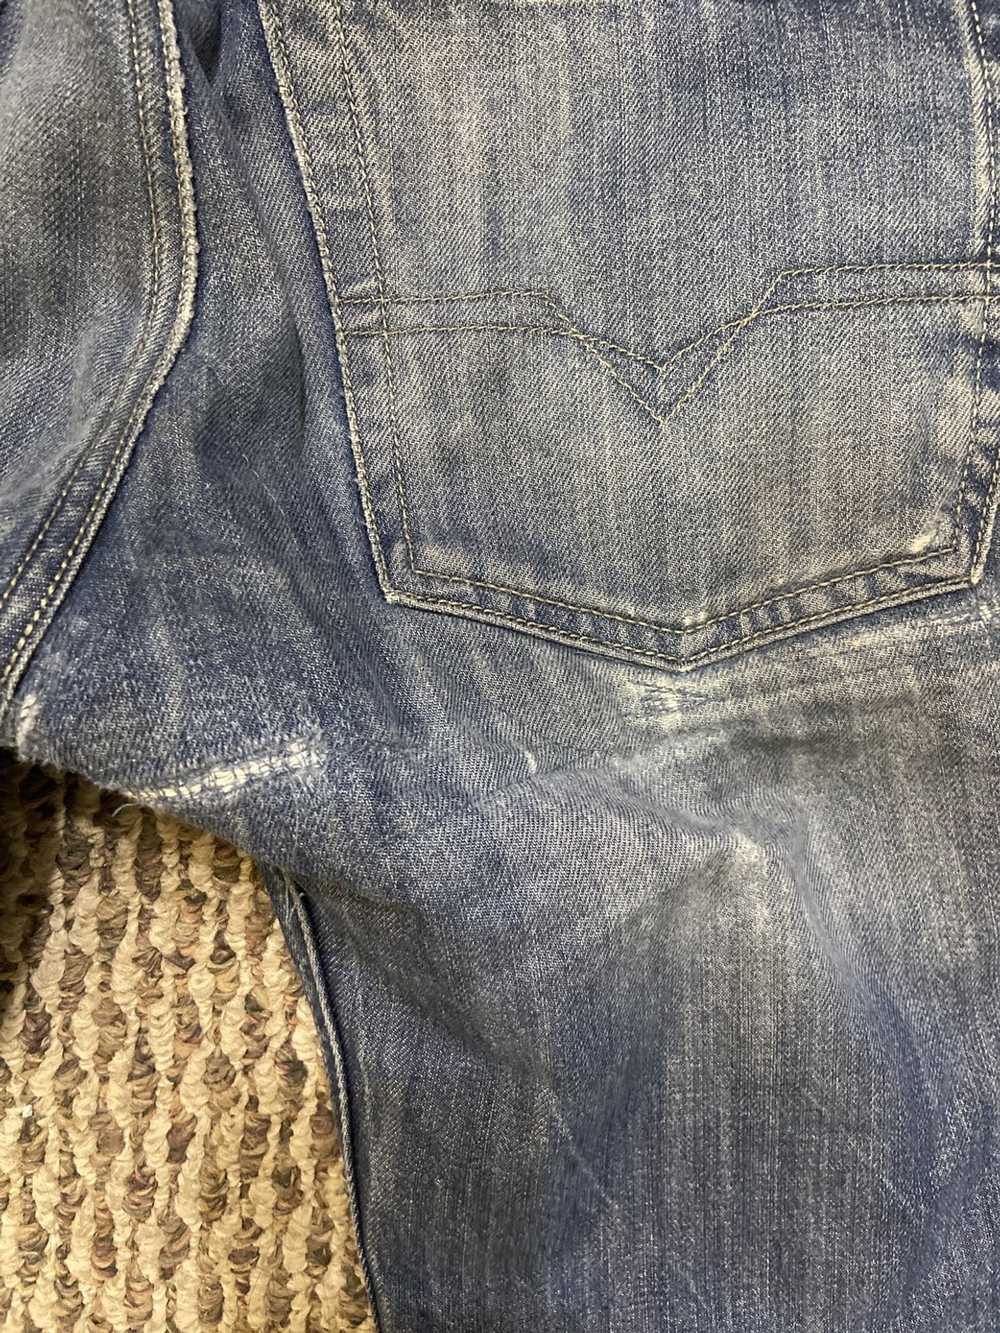 Diesel Diesel repaired patchwork jeans - image 5